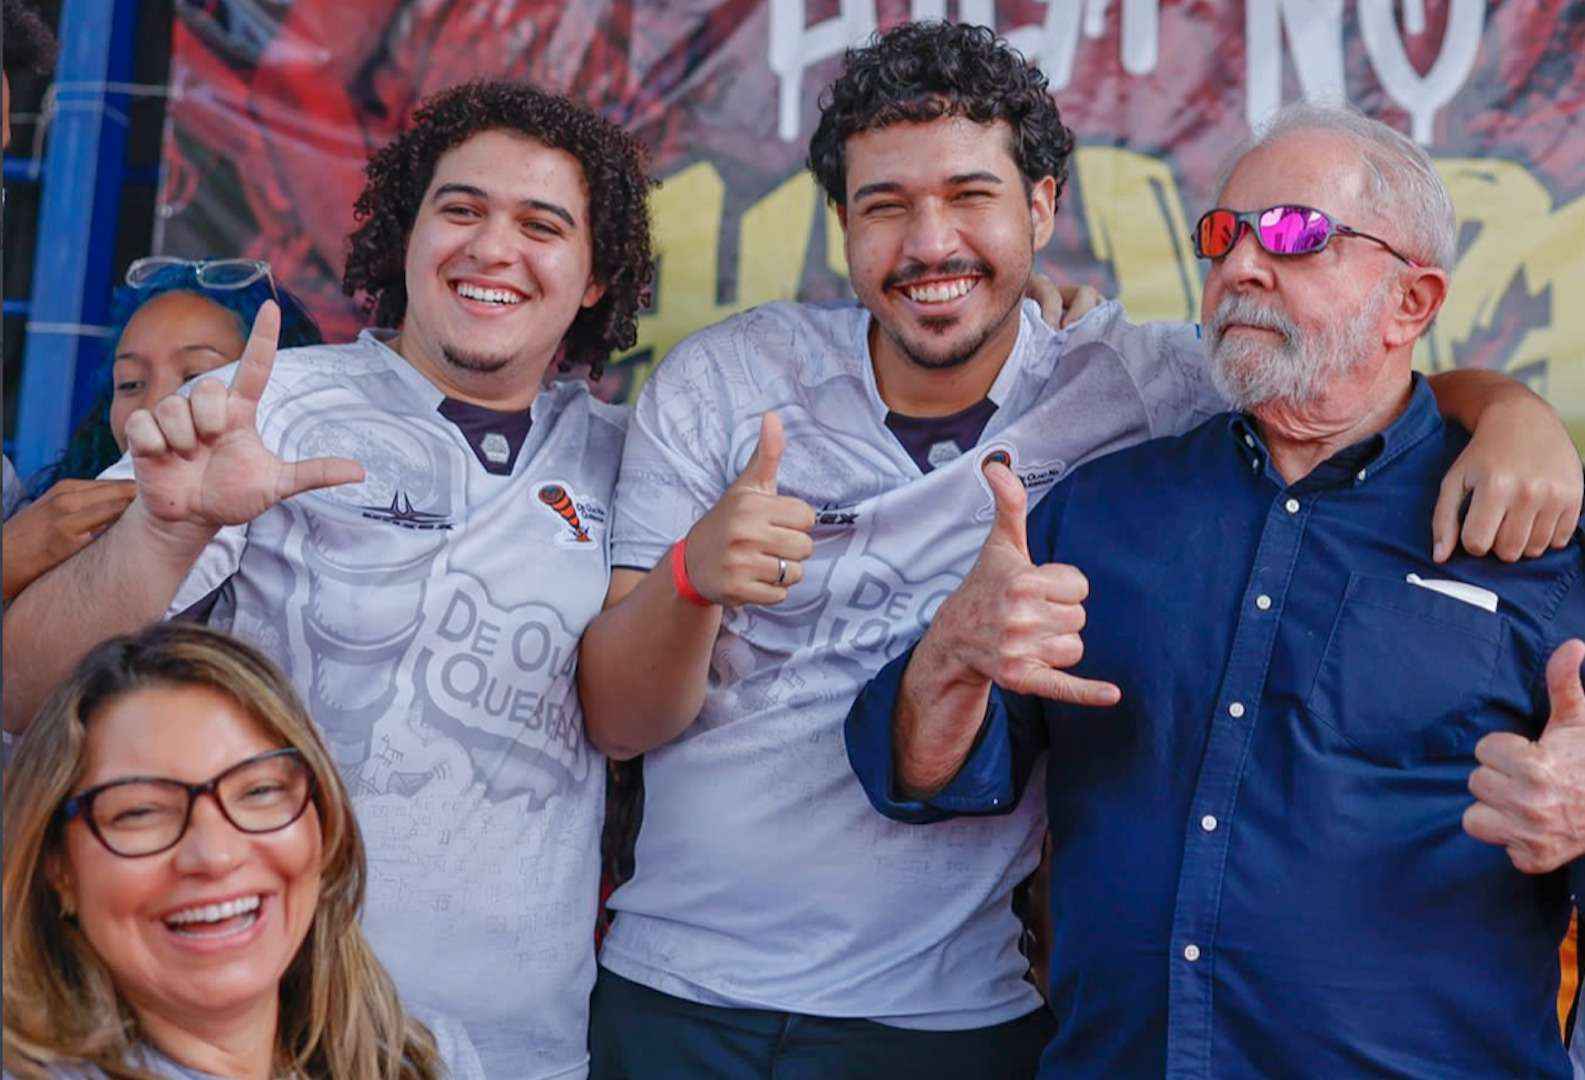 Lula mira eleitorado jovem nas redes sociais com óculos juliet